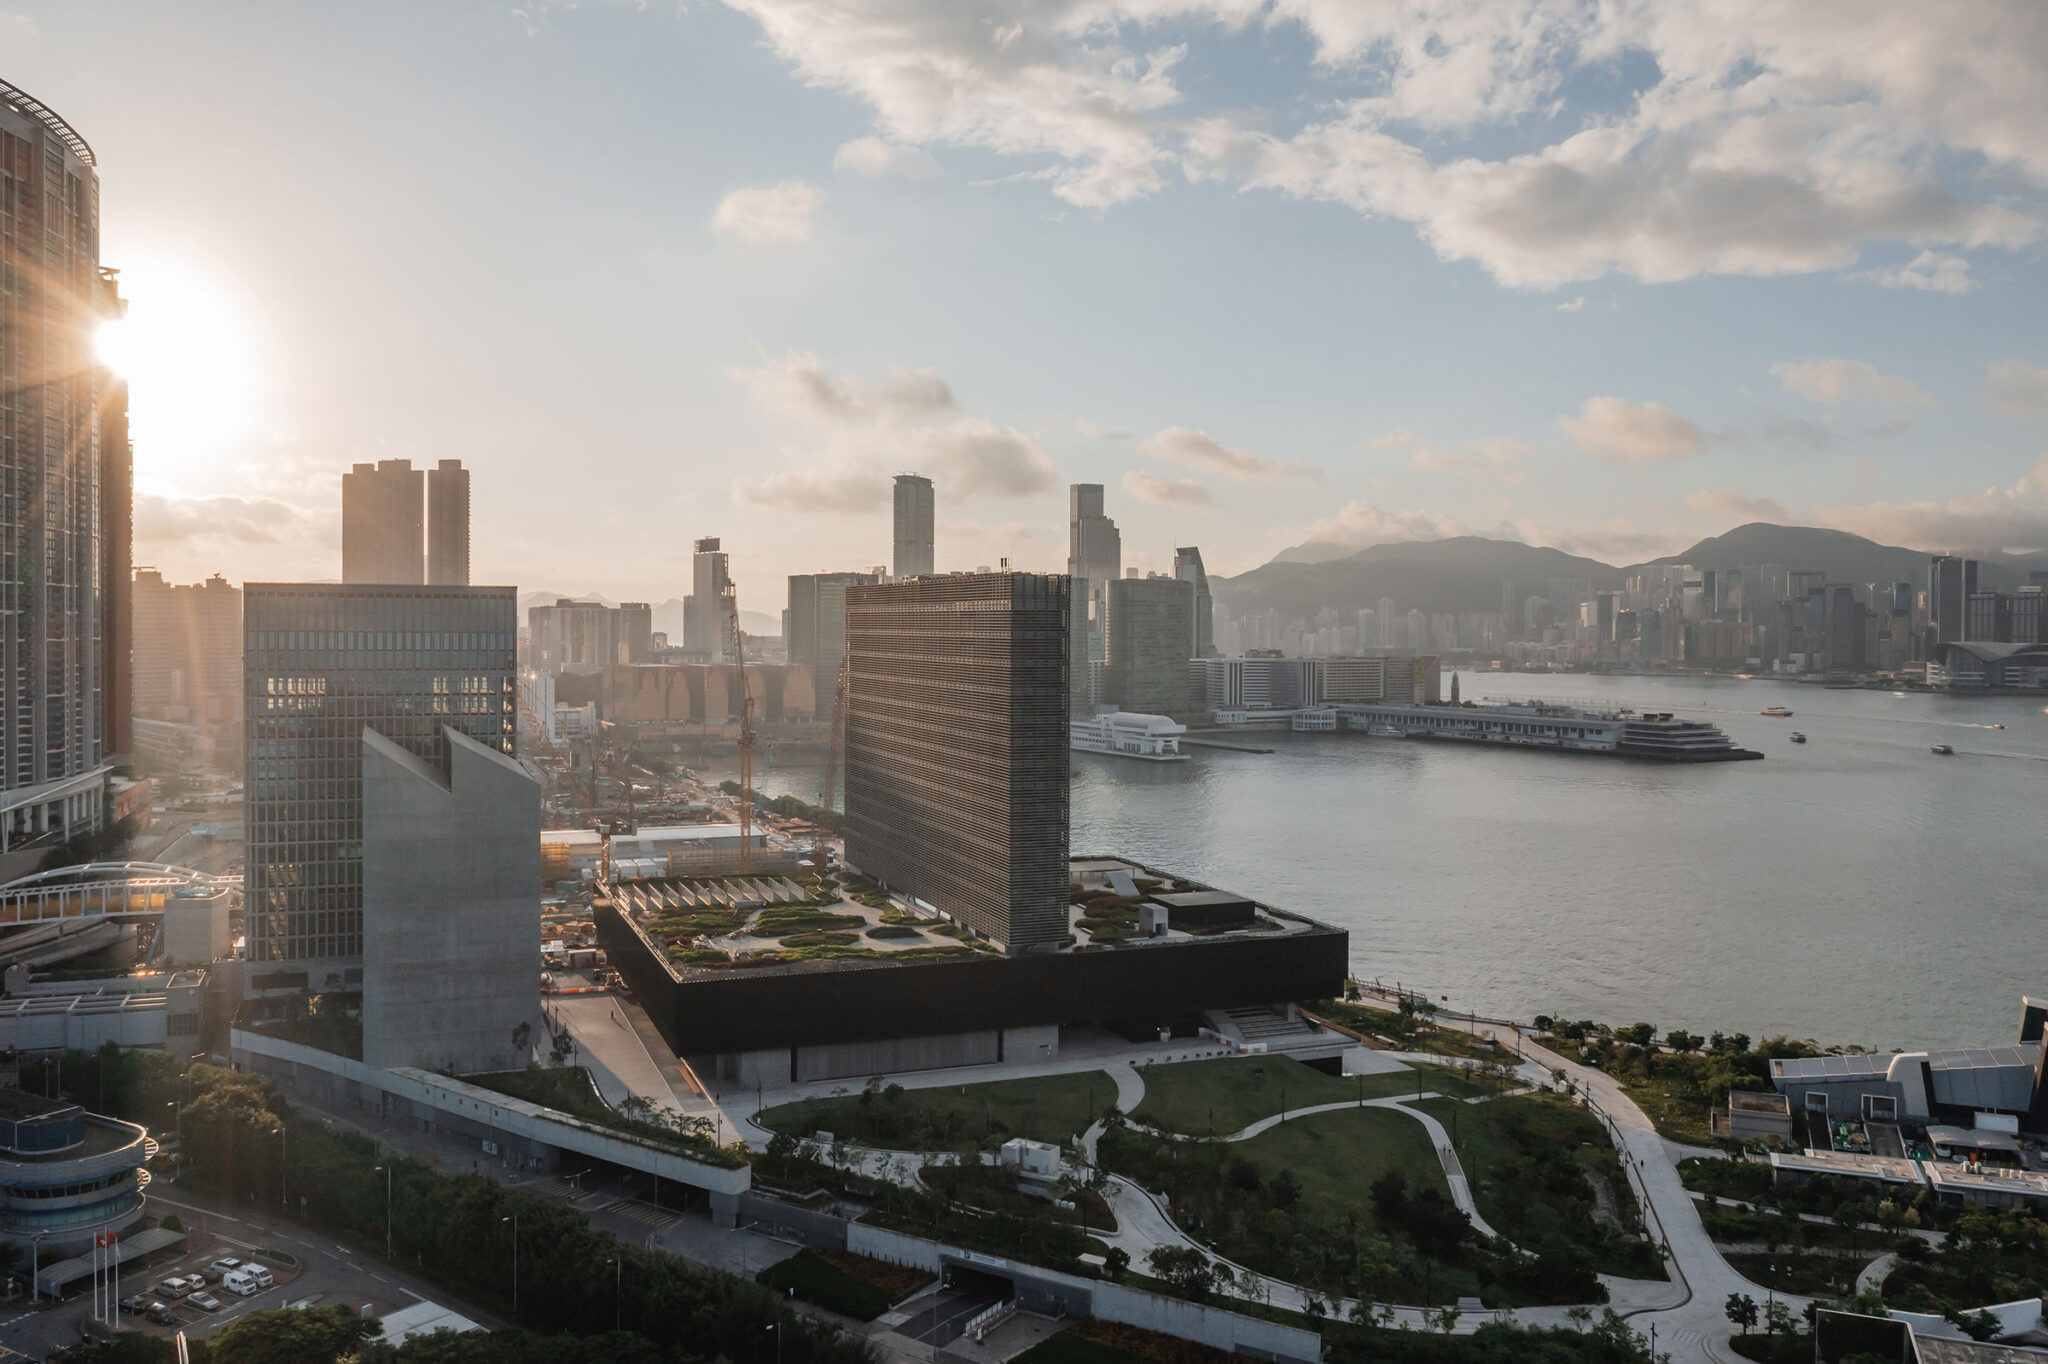 ヘルツォーグ ド ムーロン Tfpファレルズ アラップによる 中国 香港の美術館 M アジア初の世界的な視覚文化のミュージアムで ファサードに大型スクリーンを備えた記念碑的な外観と 埋め立て地だからこそ生まれた巨大な地下展示空間を